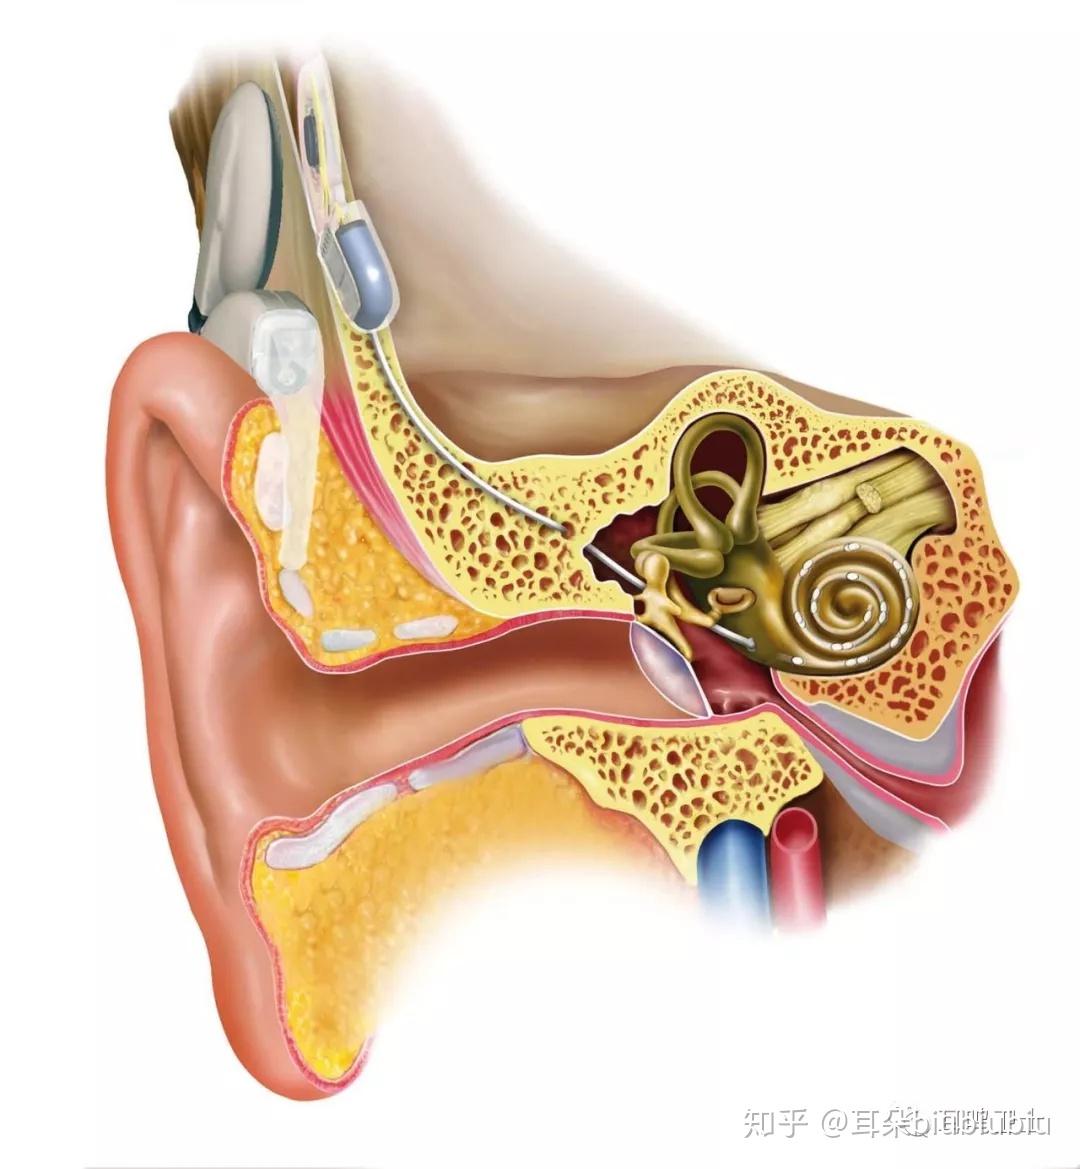 外耳道损伤 鼓膜损伤,医疗图片素材_高清图片素材